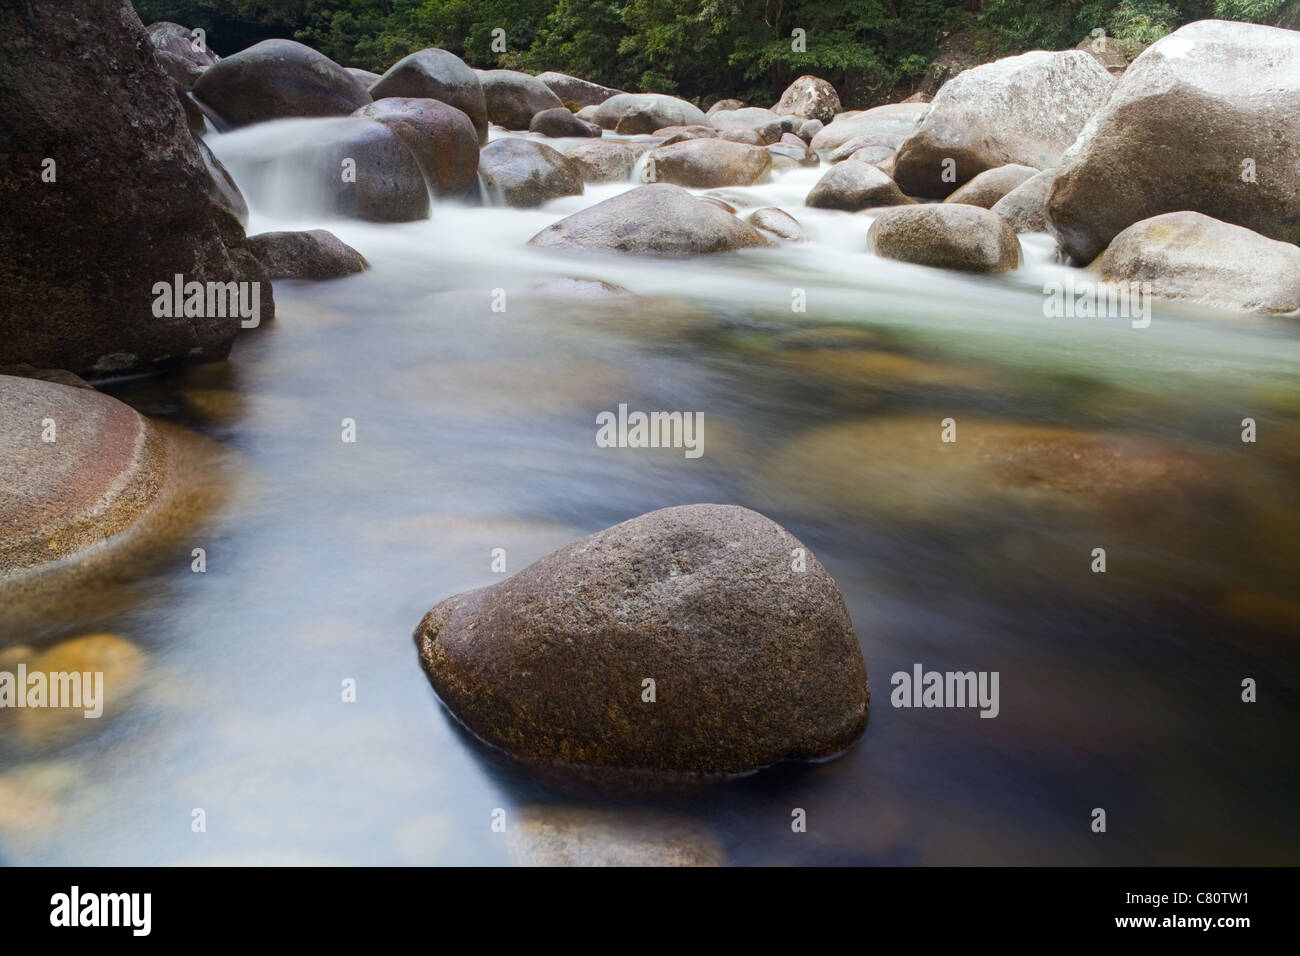 pebbels or rocks in creek or stream flowing water Stock Photo